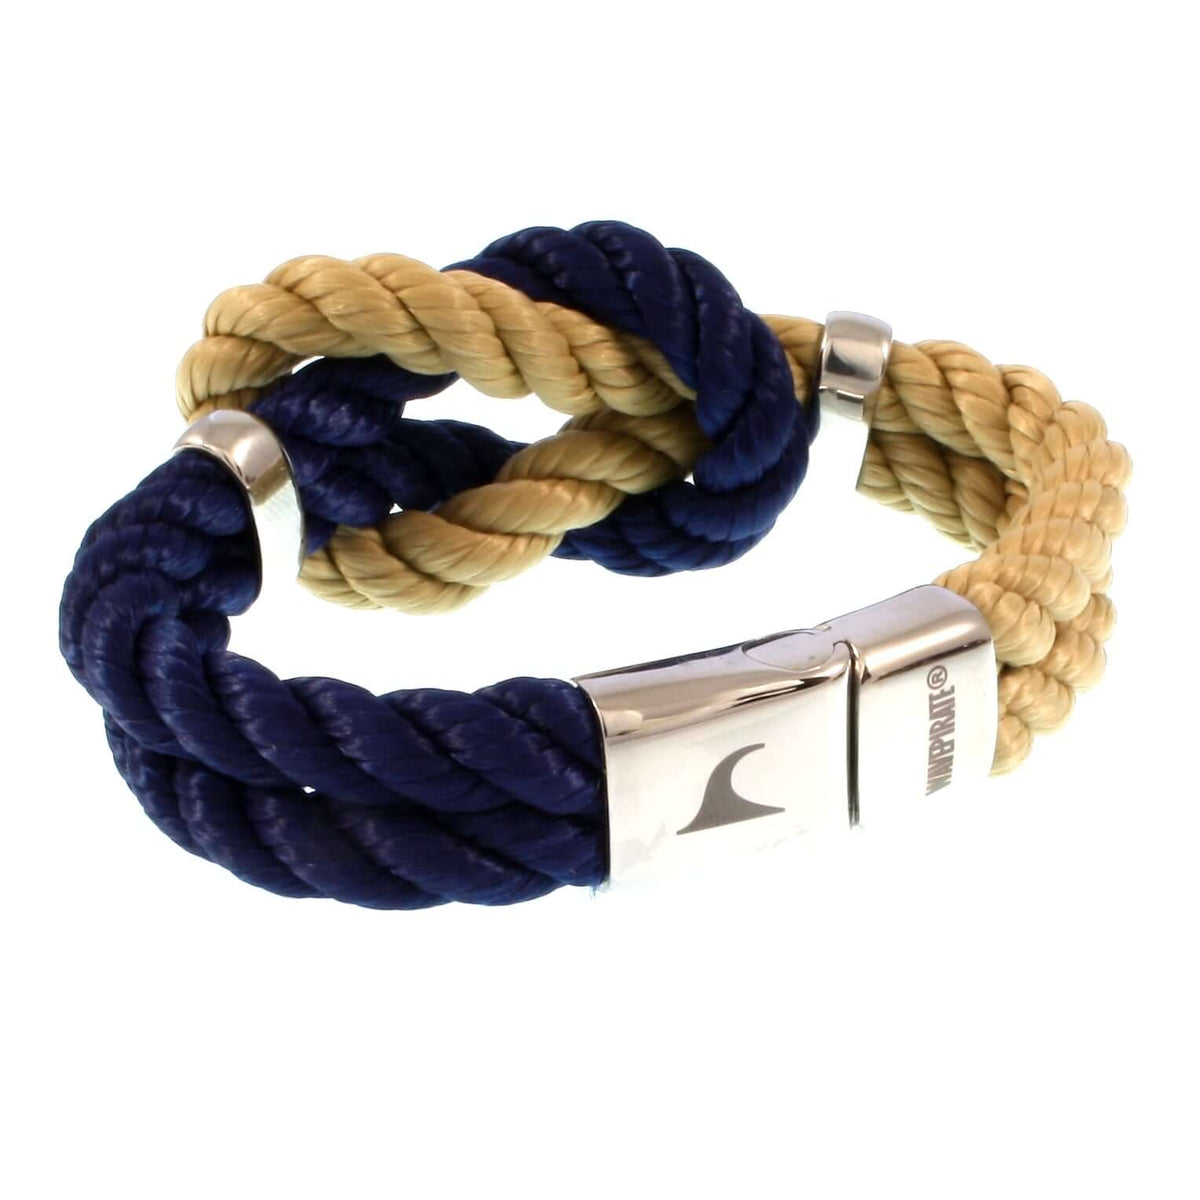 Damen-Segeltau-armband-pure-blau-natur-beige-silber-kordel-geflochten-Edelstahlverschluss-vorn-wavepirate-shop-k